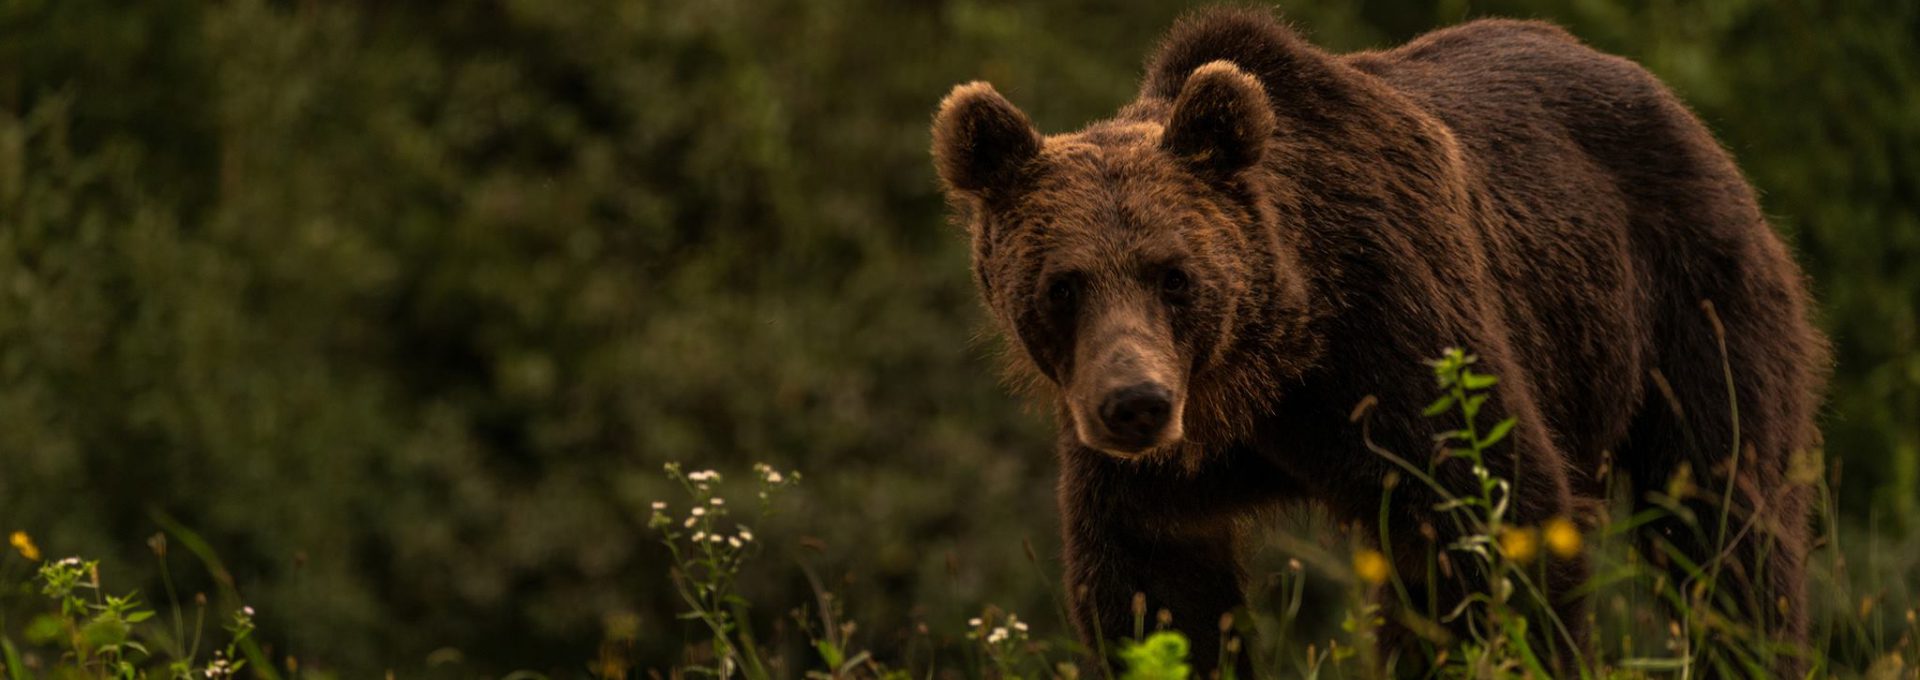 Bärenbeobachtung in Rumänien